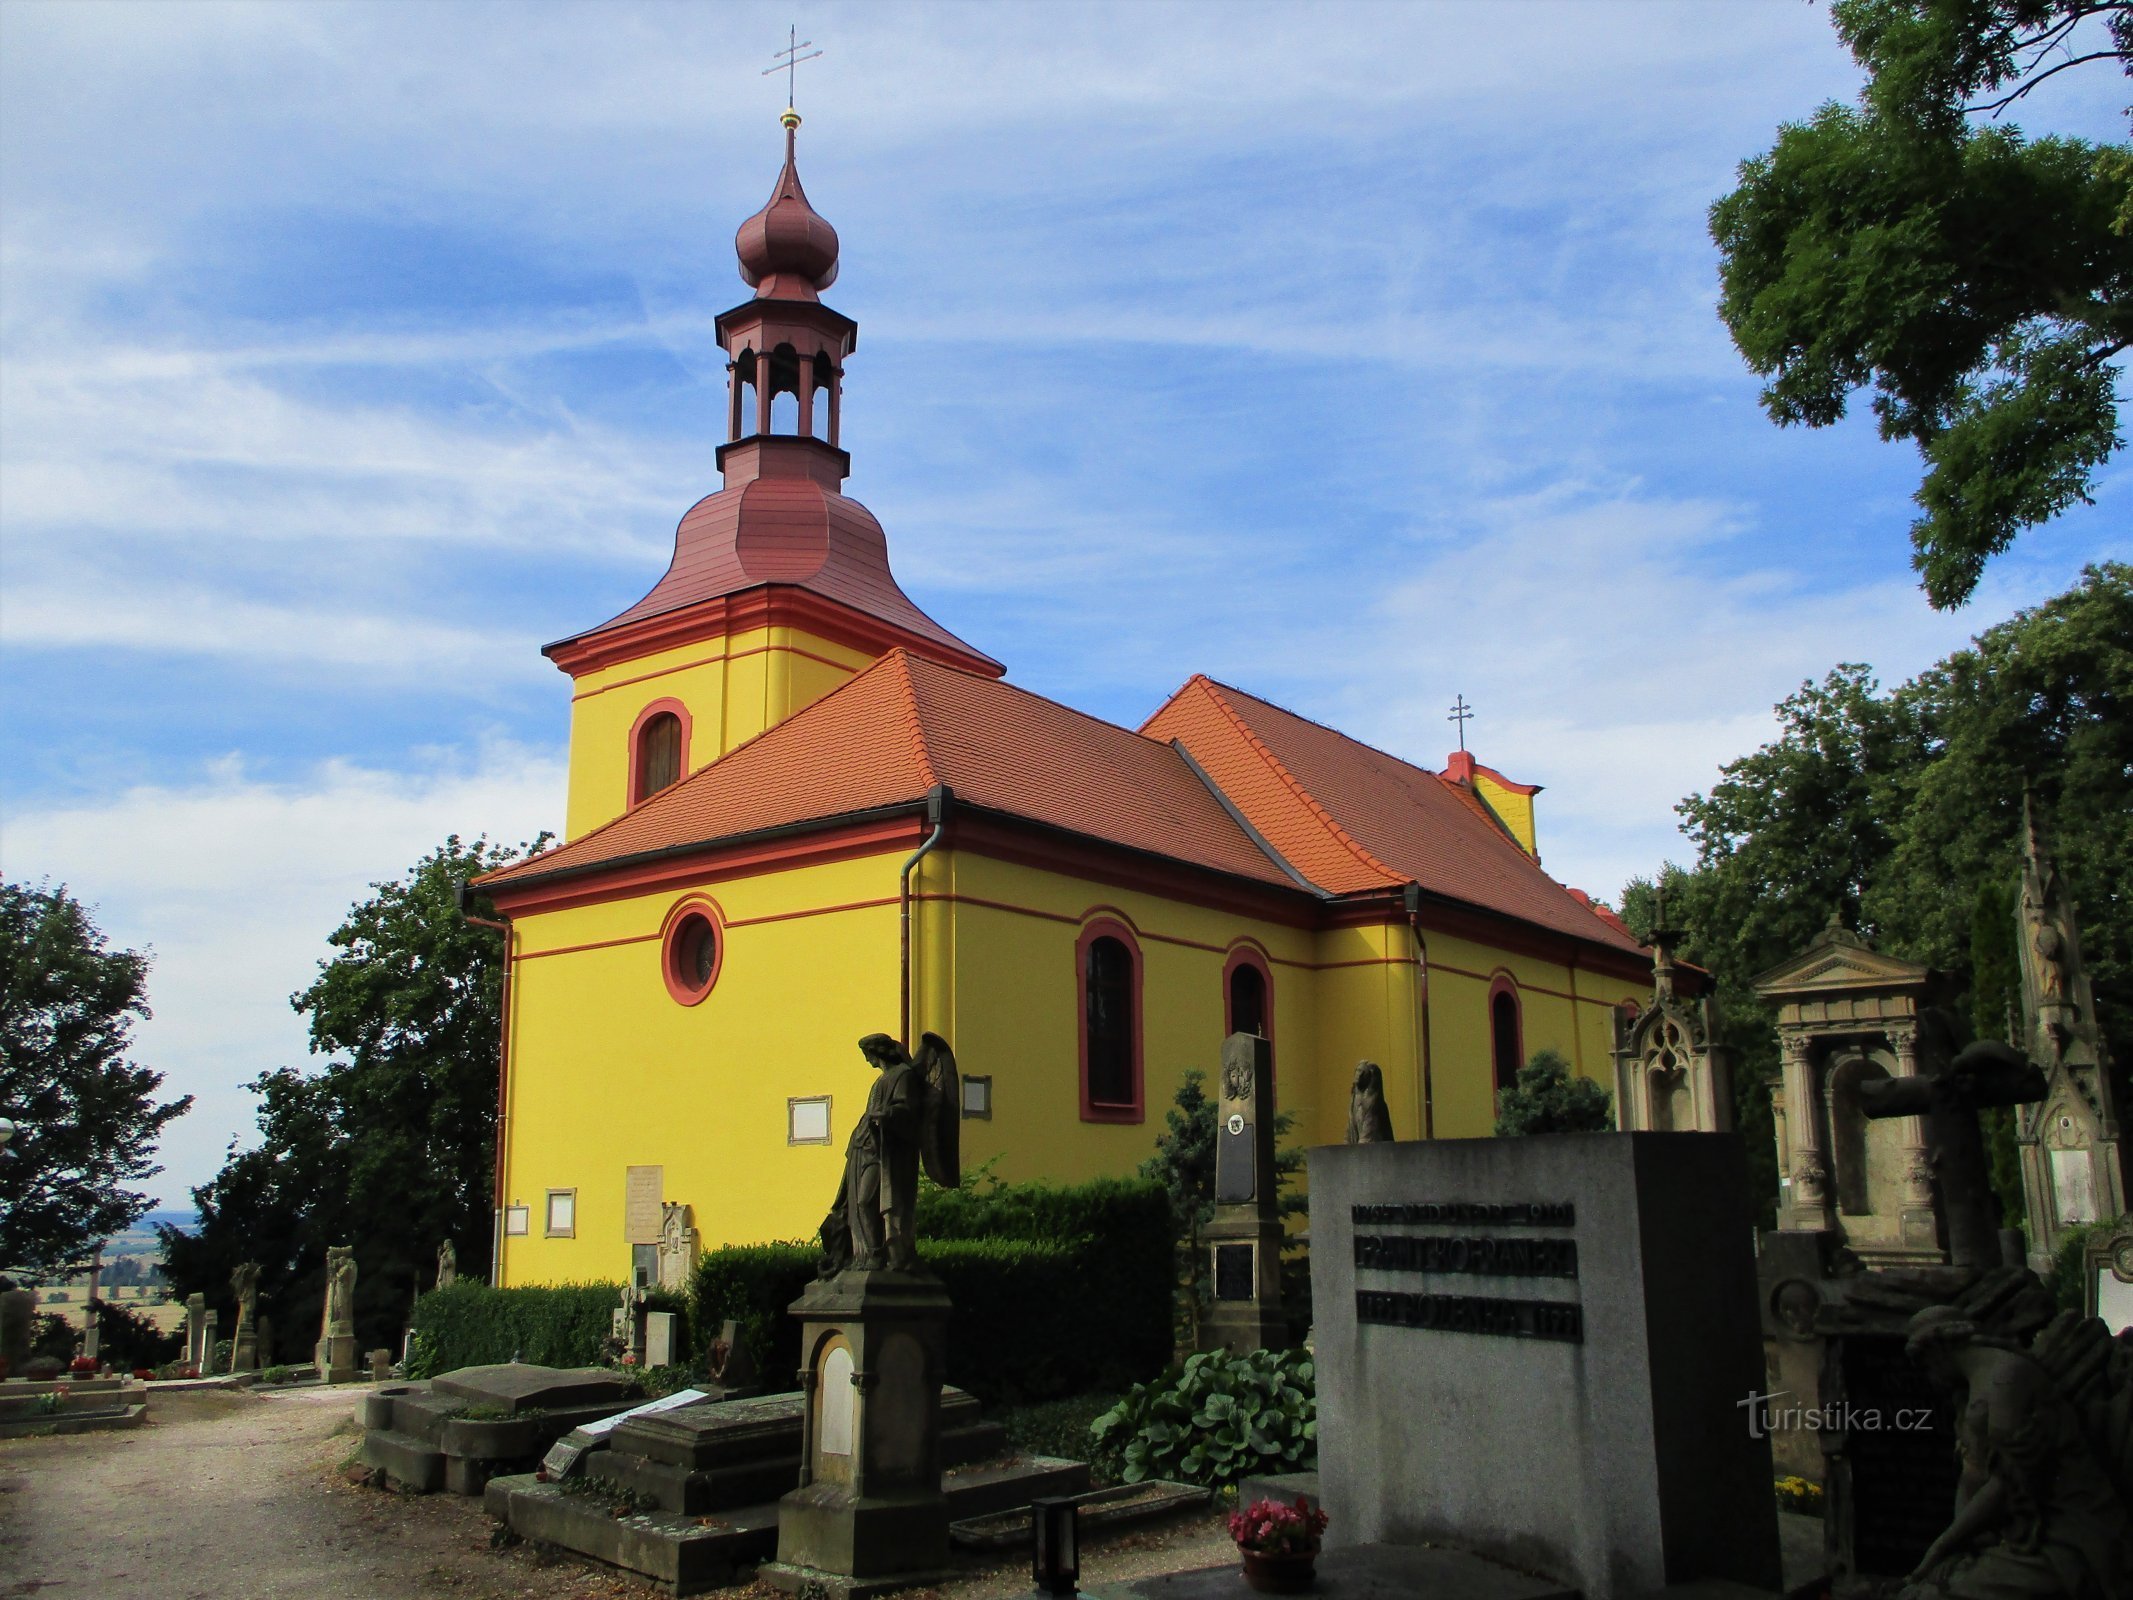 Cemetery Church of St. Gothard, biskop (Hořice, 26.7.2020-XNUMX-XNUMX)